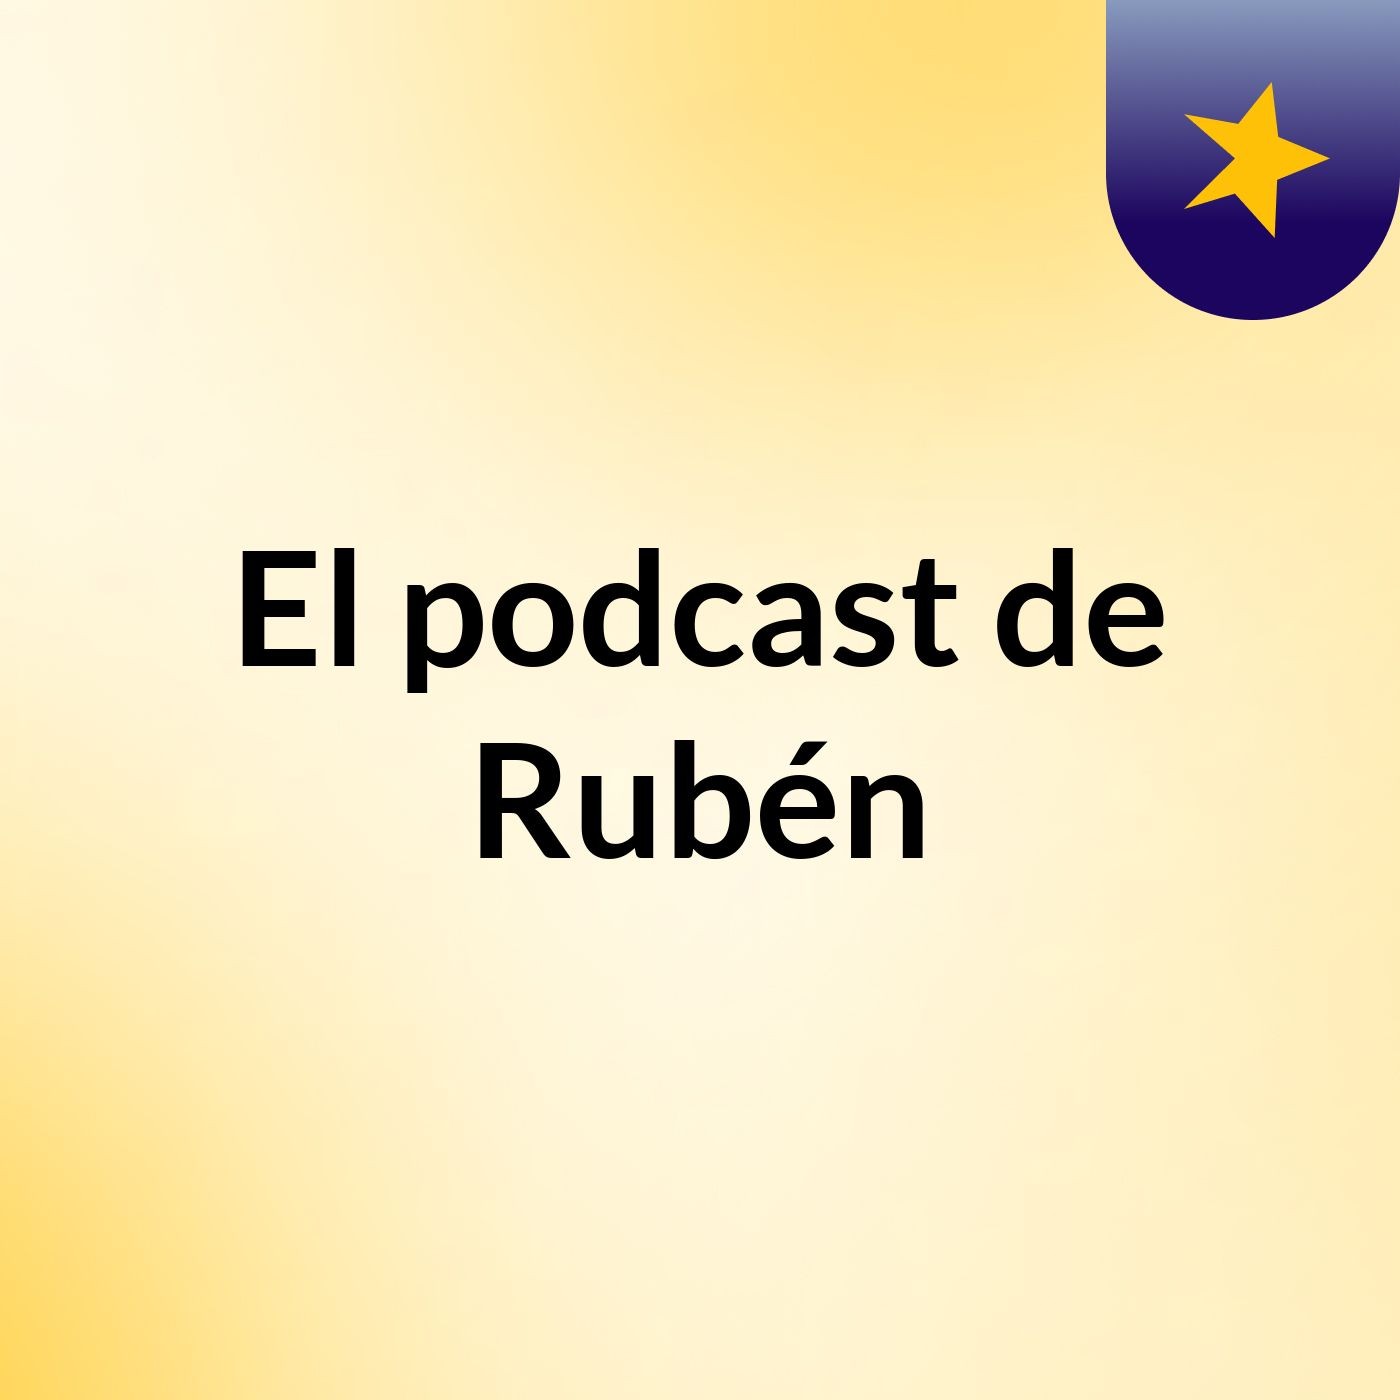 El podcast de Rubén